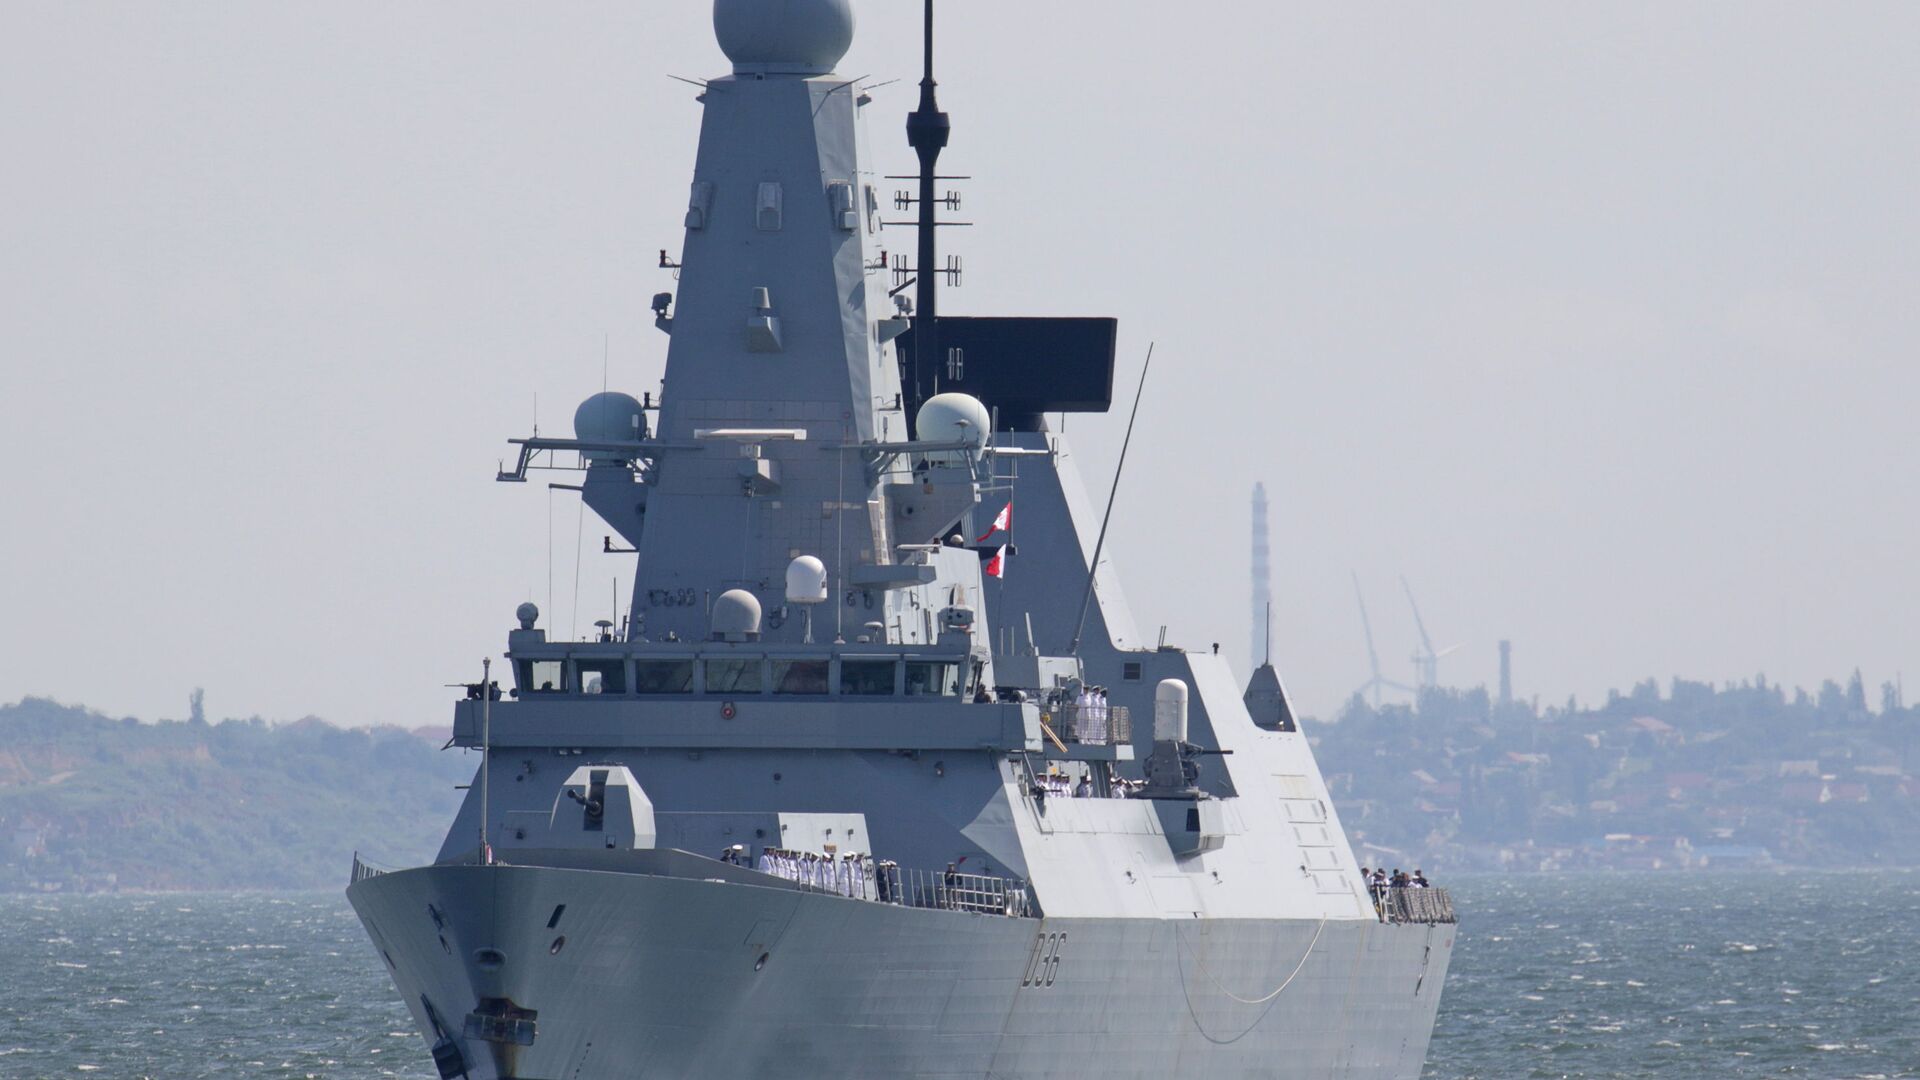 Razarač tipa HMS „Defender“ britanske kraljevske mornarice stiže u crnomorsku luku Odesa, Ukrajina, 18. juna 2021. - Sputnik Srbija, 1920, 27.06.2021